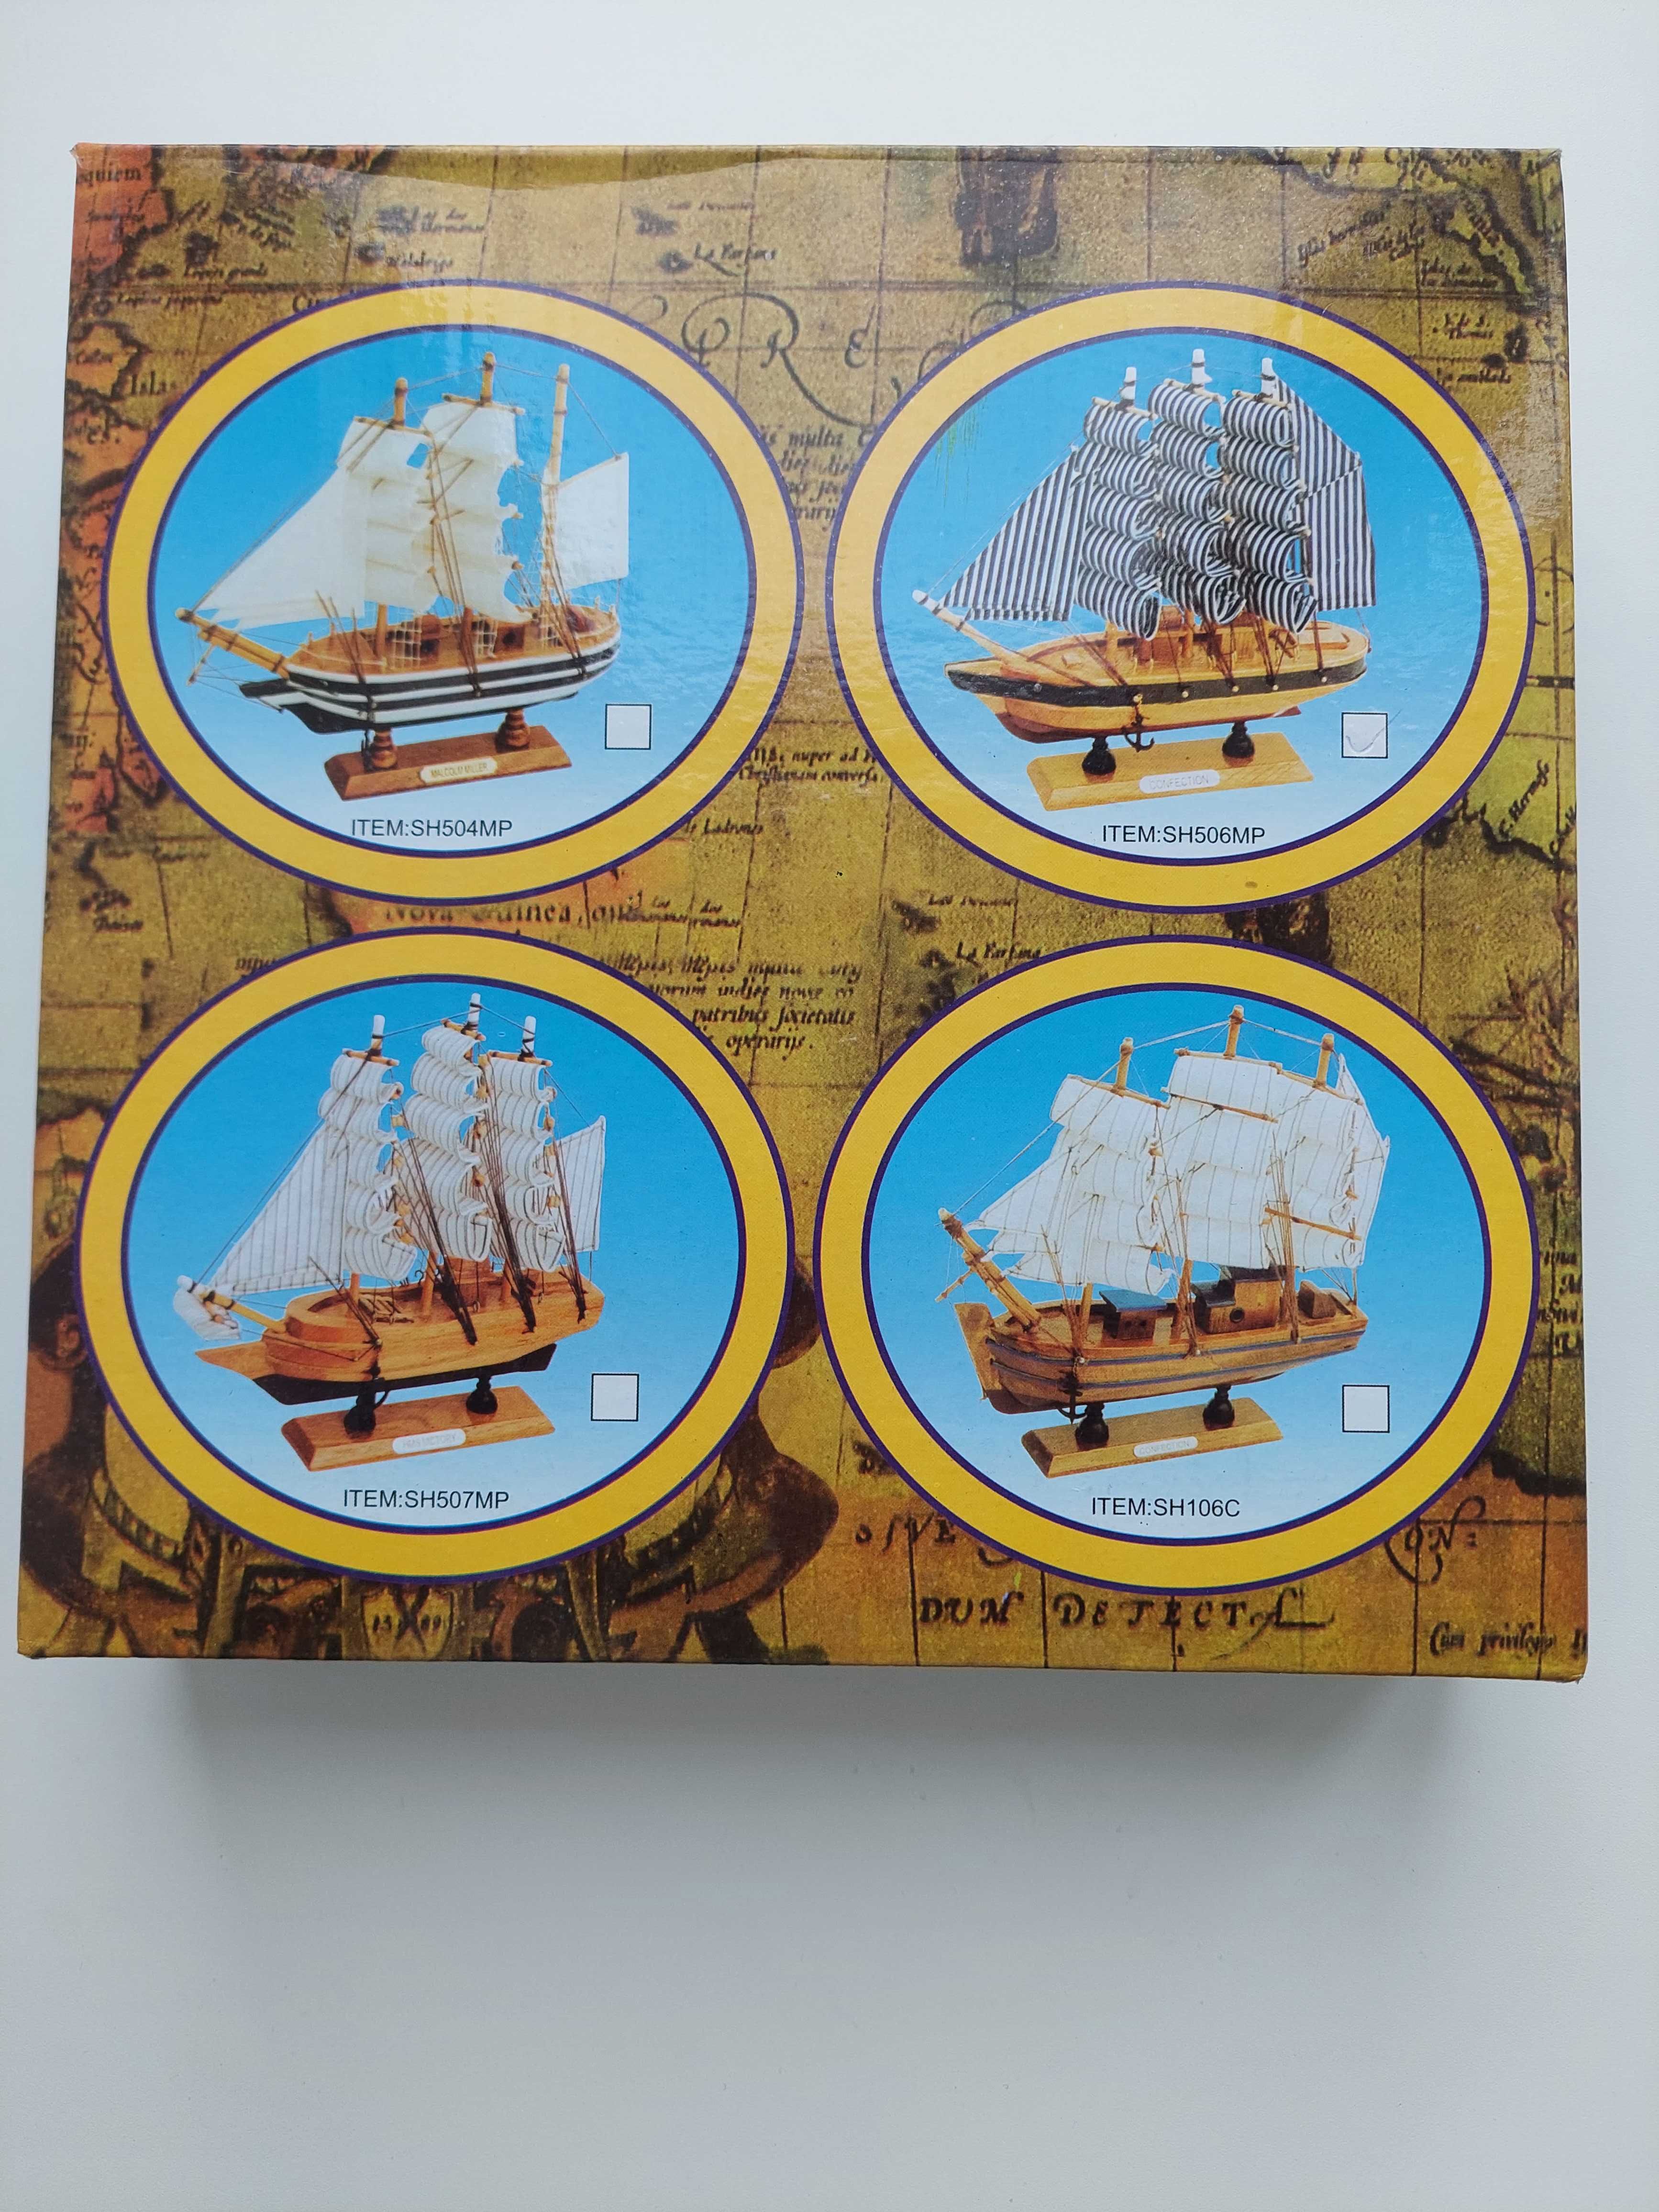 Продам сувенир коллекционный корабль Парусник, новый в коробке.